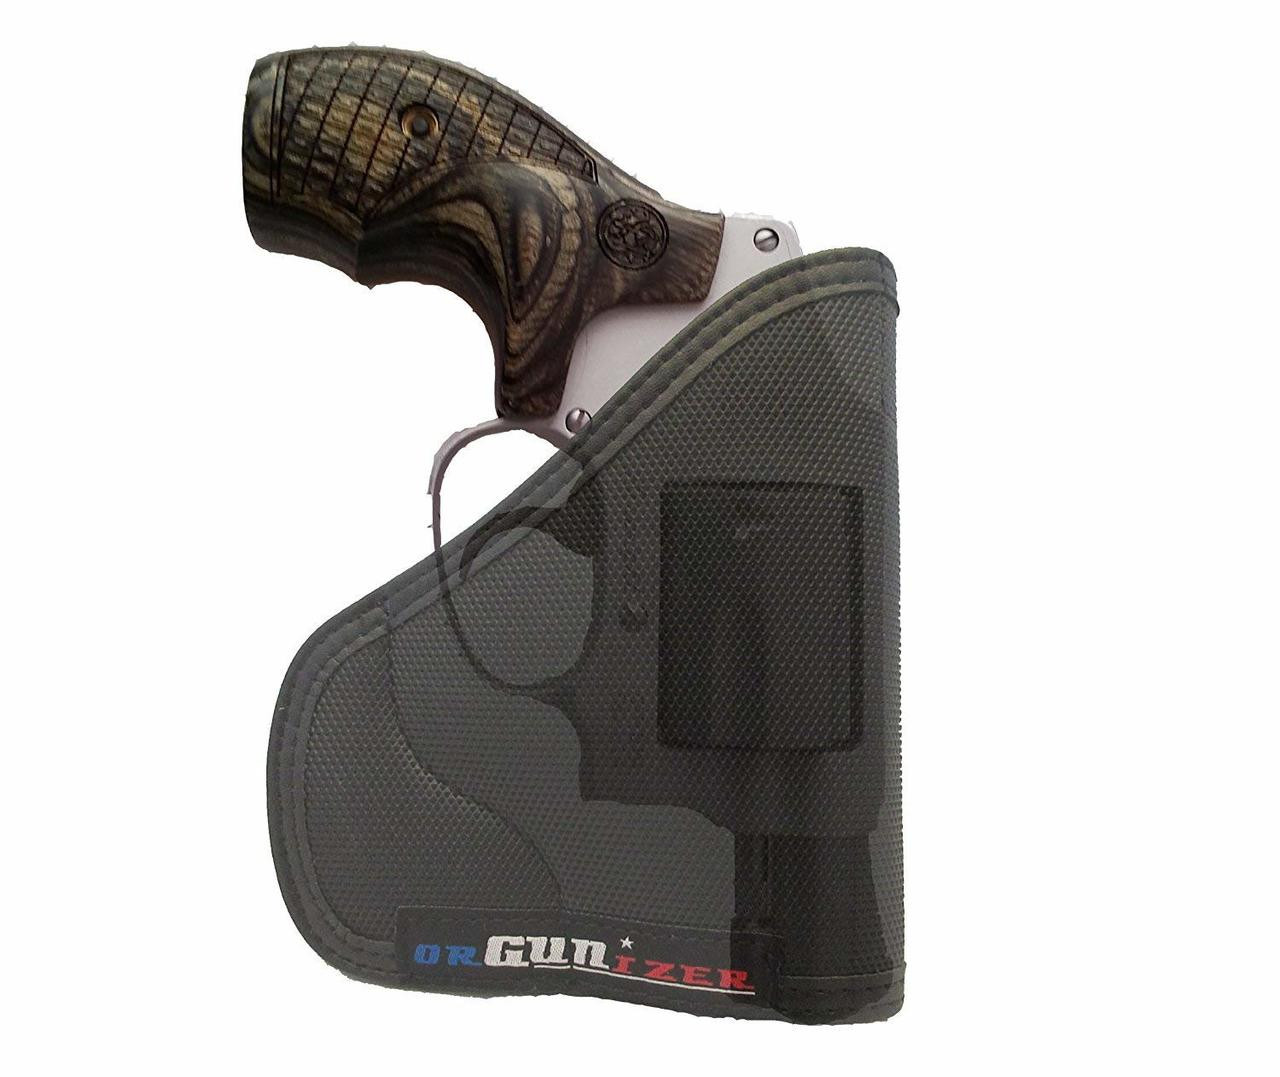 Garrison Grip Custom Fit Leather-Trimmed Pocket Holster Concealed Carry Comfort, Smith & Wesson Sm J Frame, Bodyguard